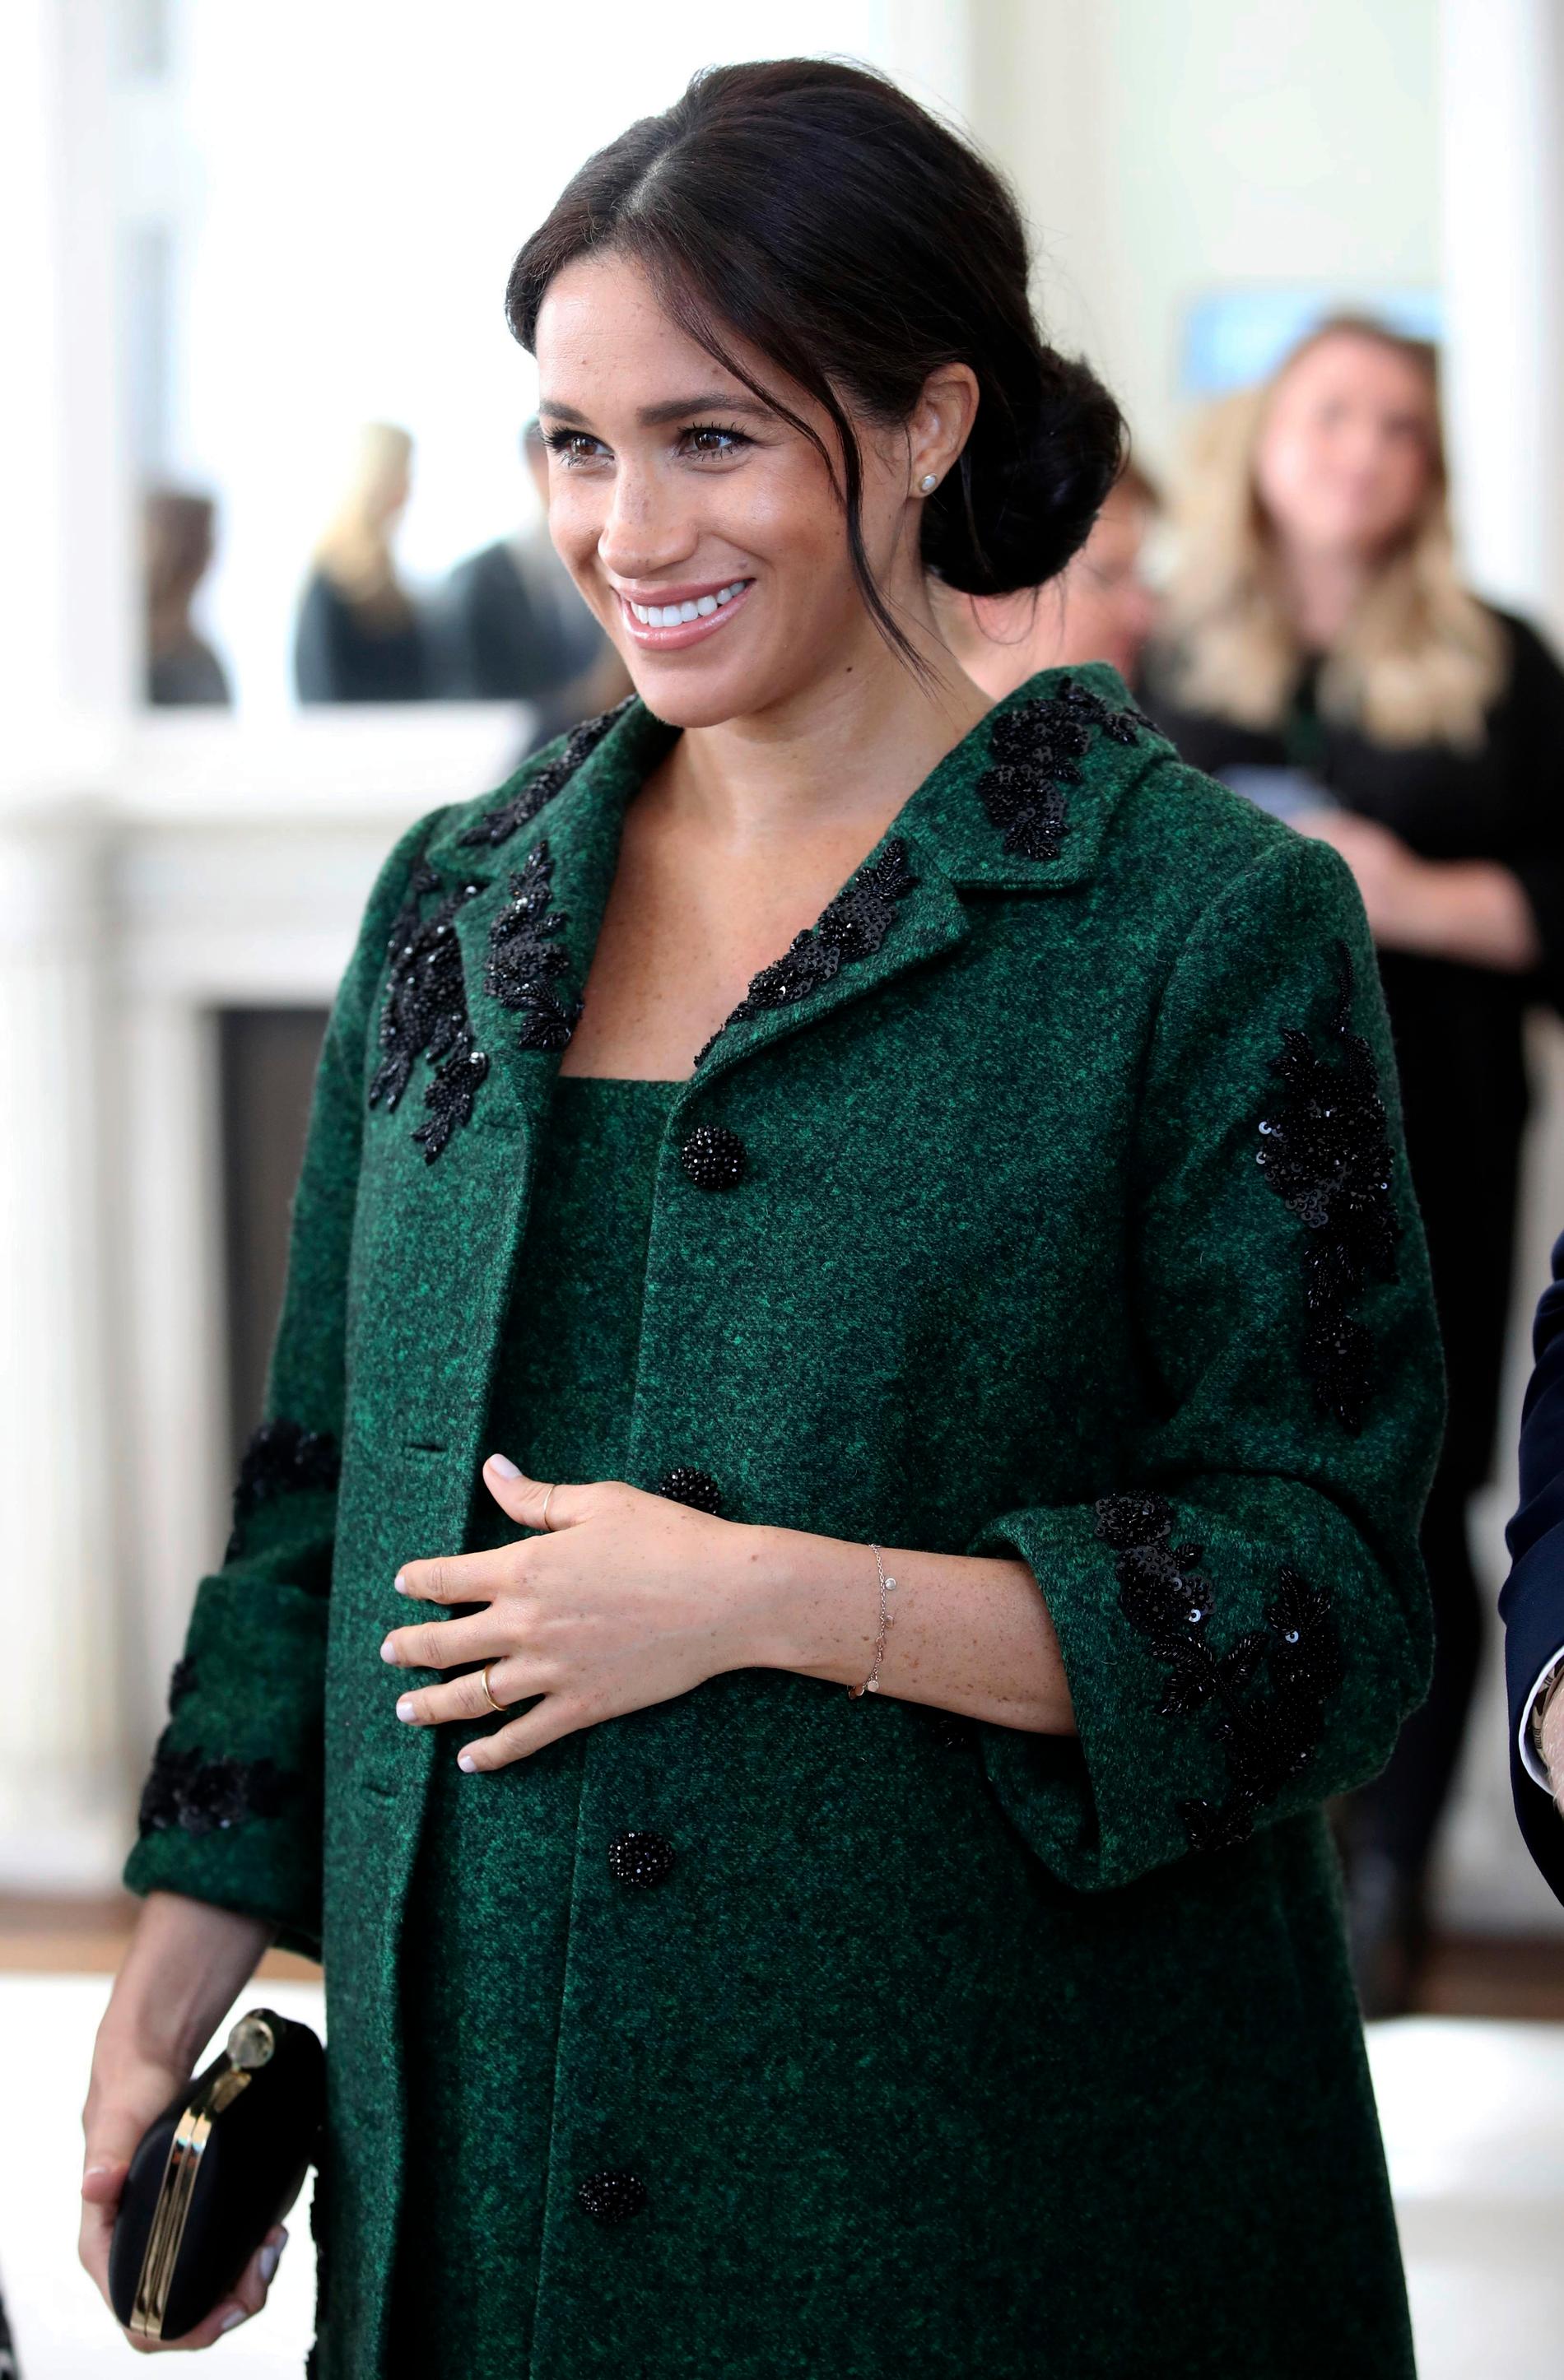 Meghan, hertiginna av Sussex, ­väntar barn tillsammans med sin prins Harry. Deras ­nystartade Instagramkonto har på kort tid fått över fyra miljoner följare.